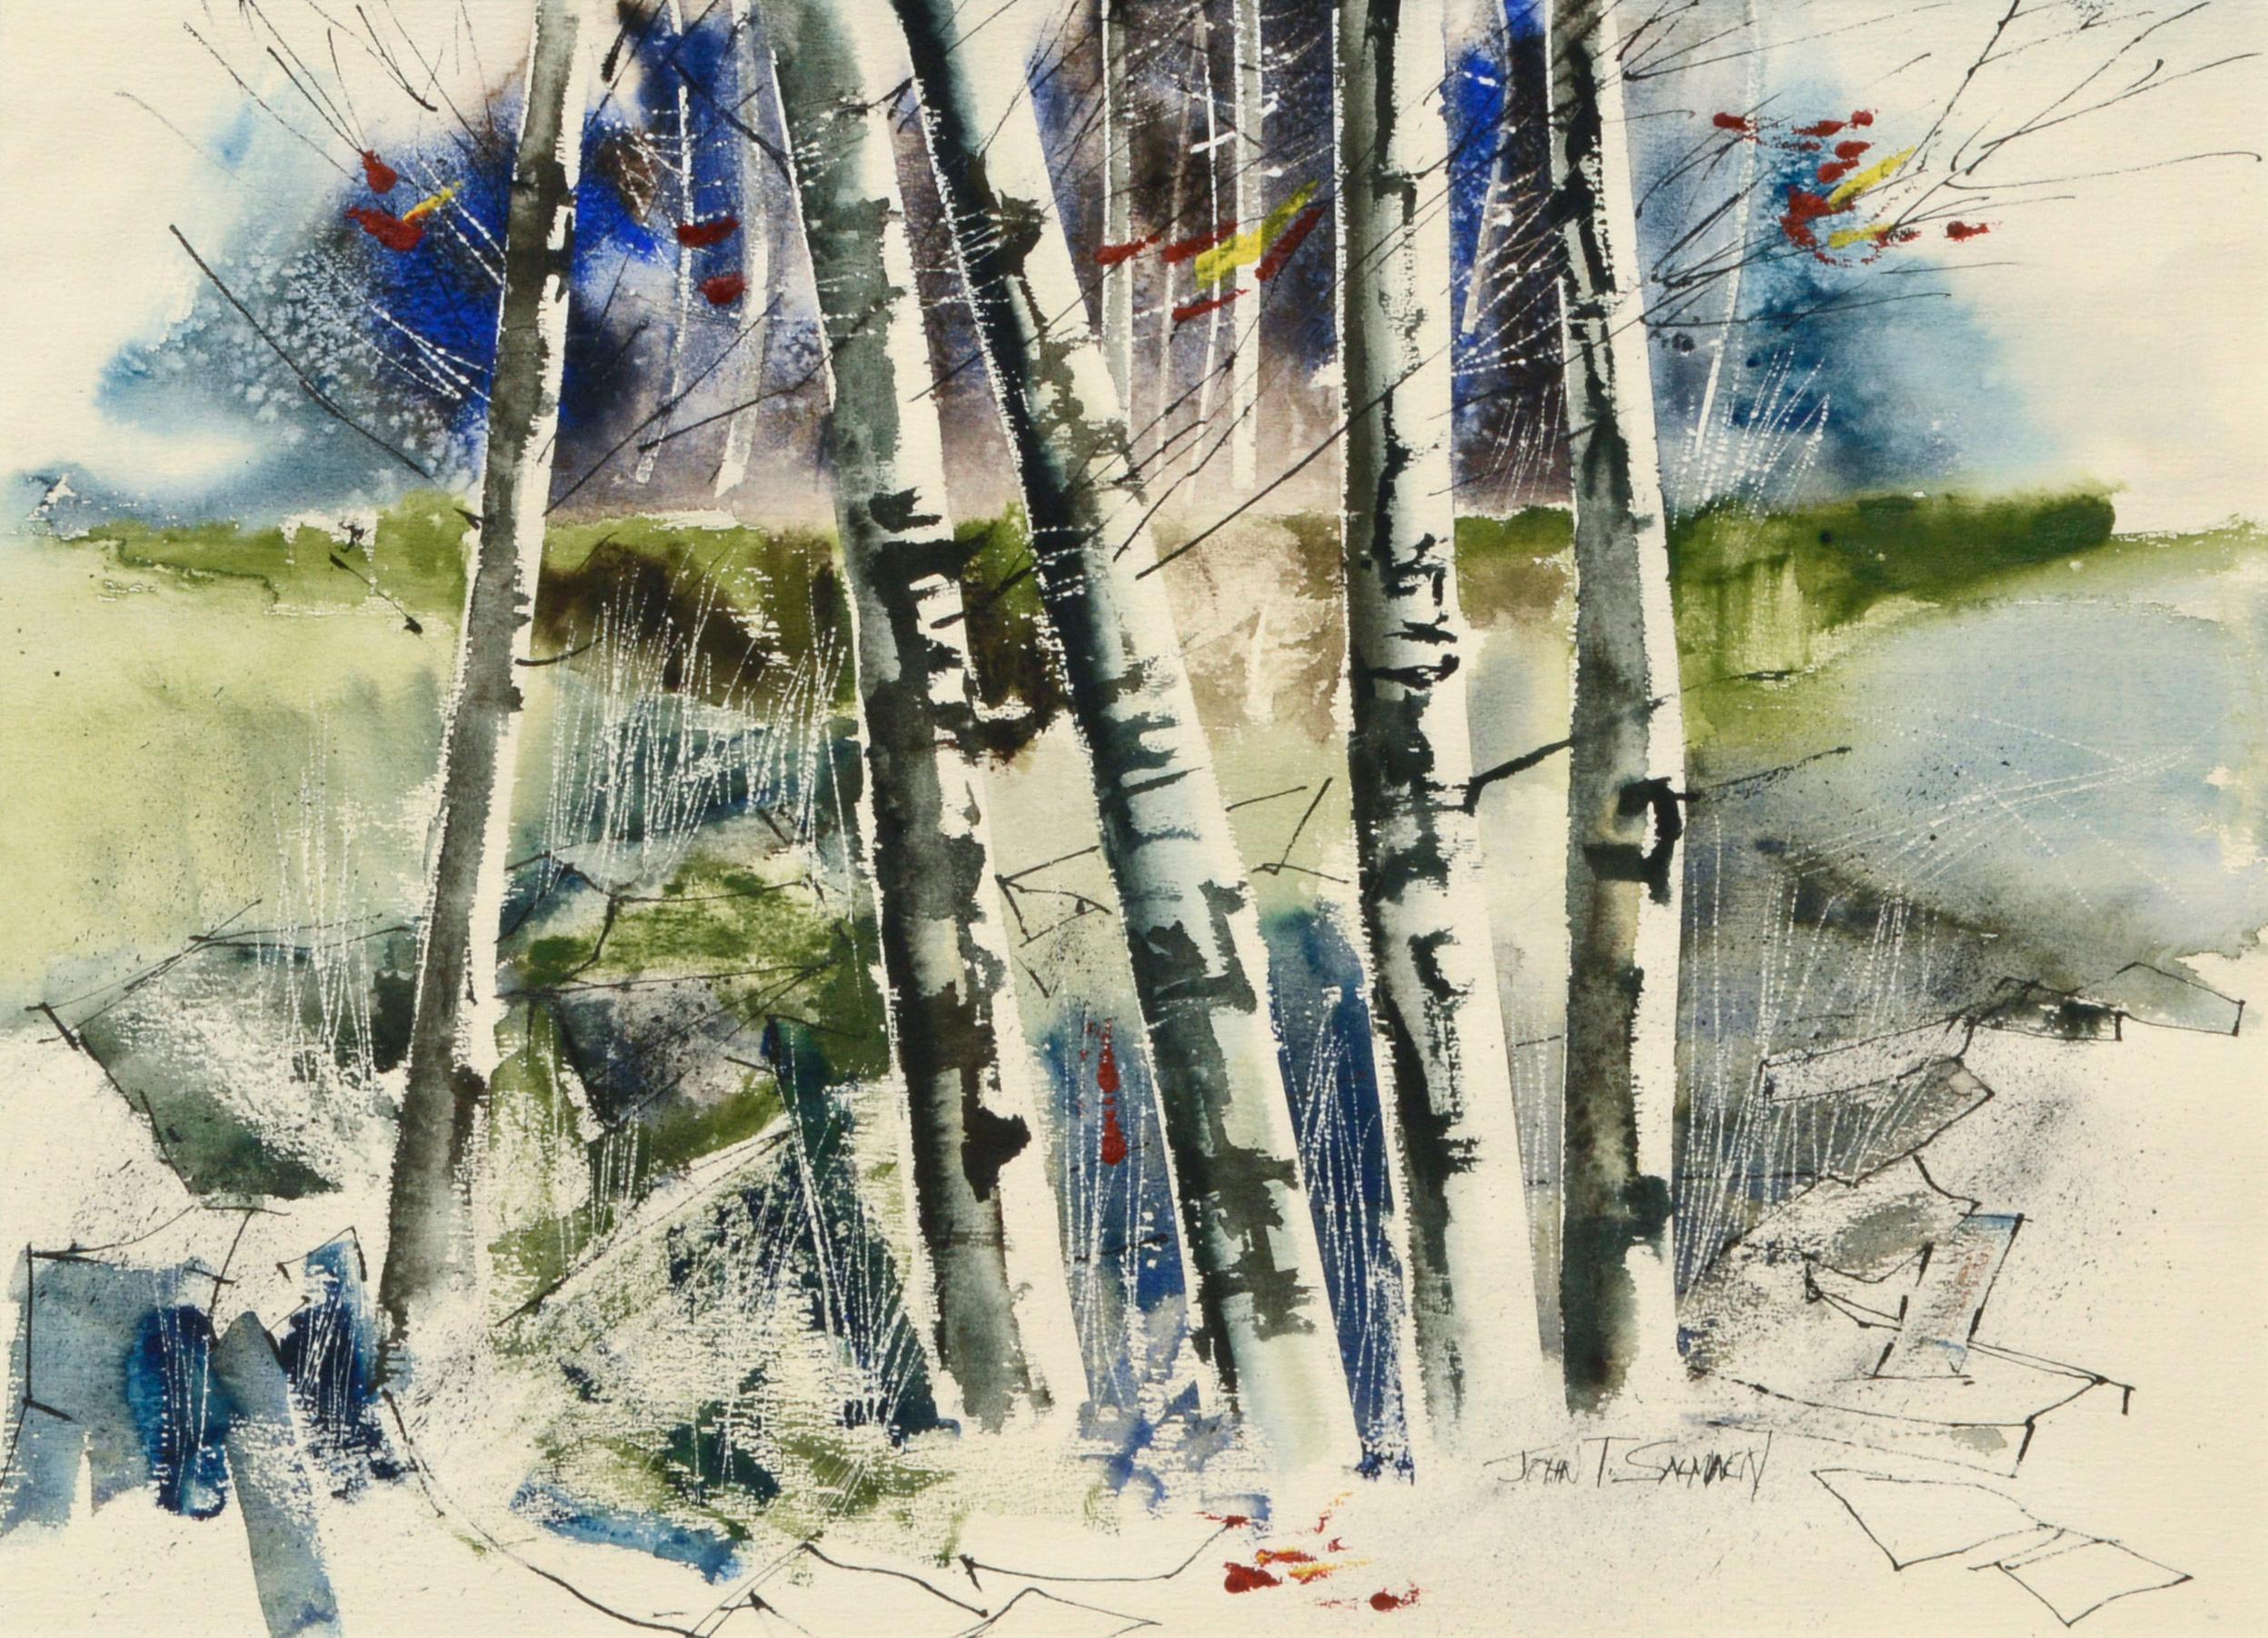 Birch Trees - Landscape in Watercolor on Paper by John Salminen - Art by John T. Salminen